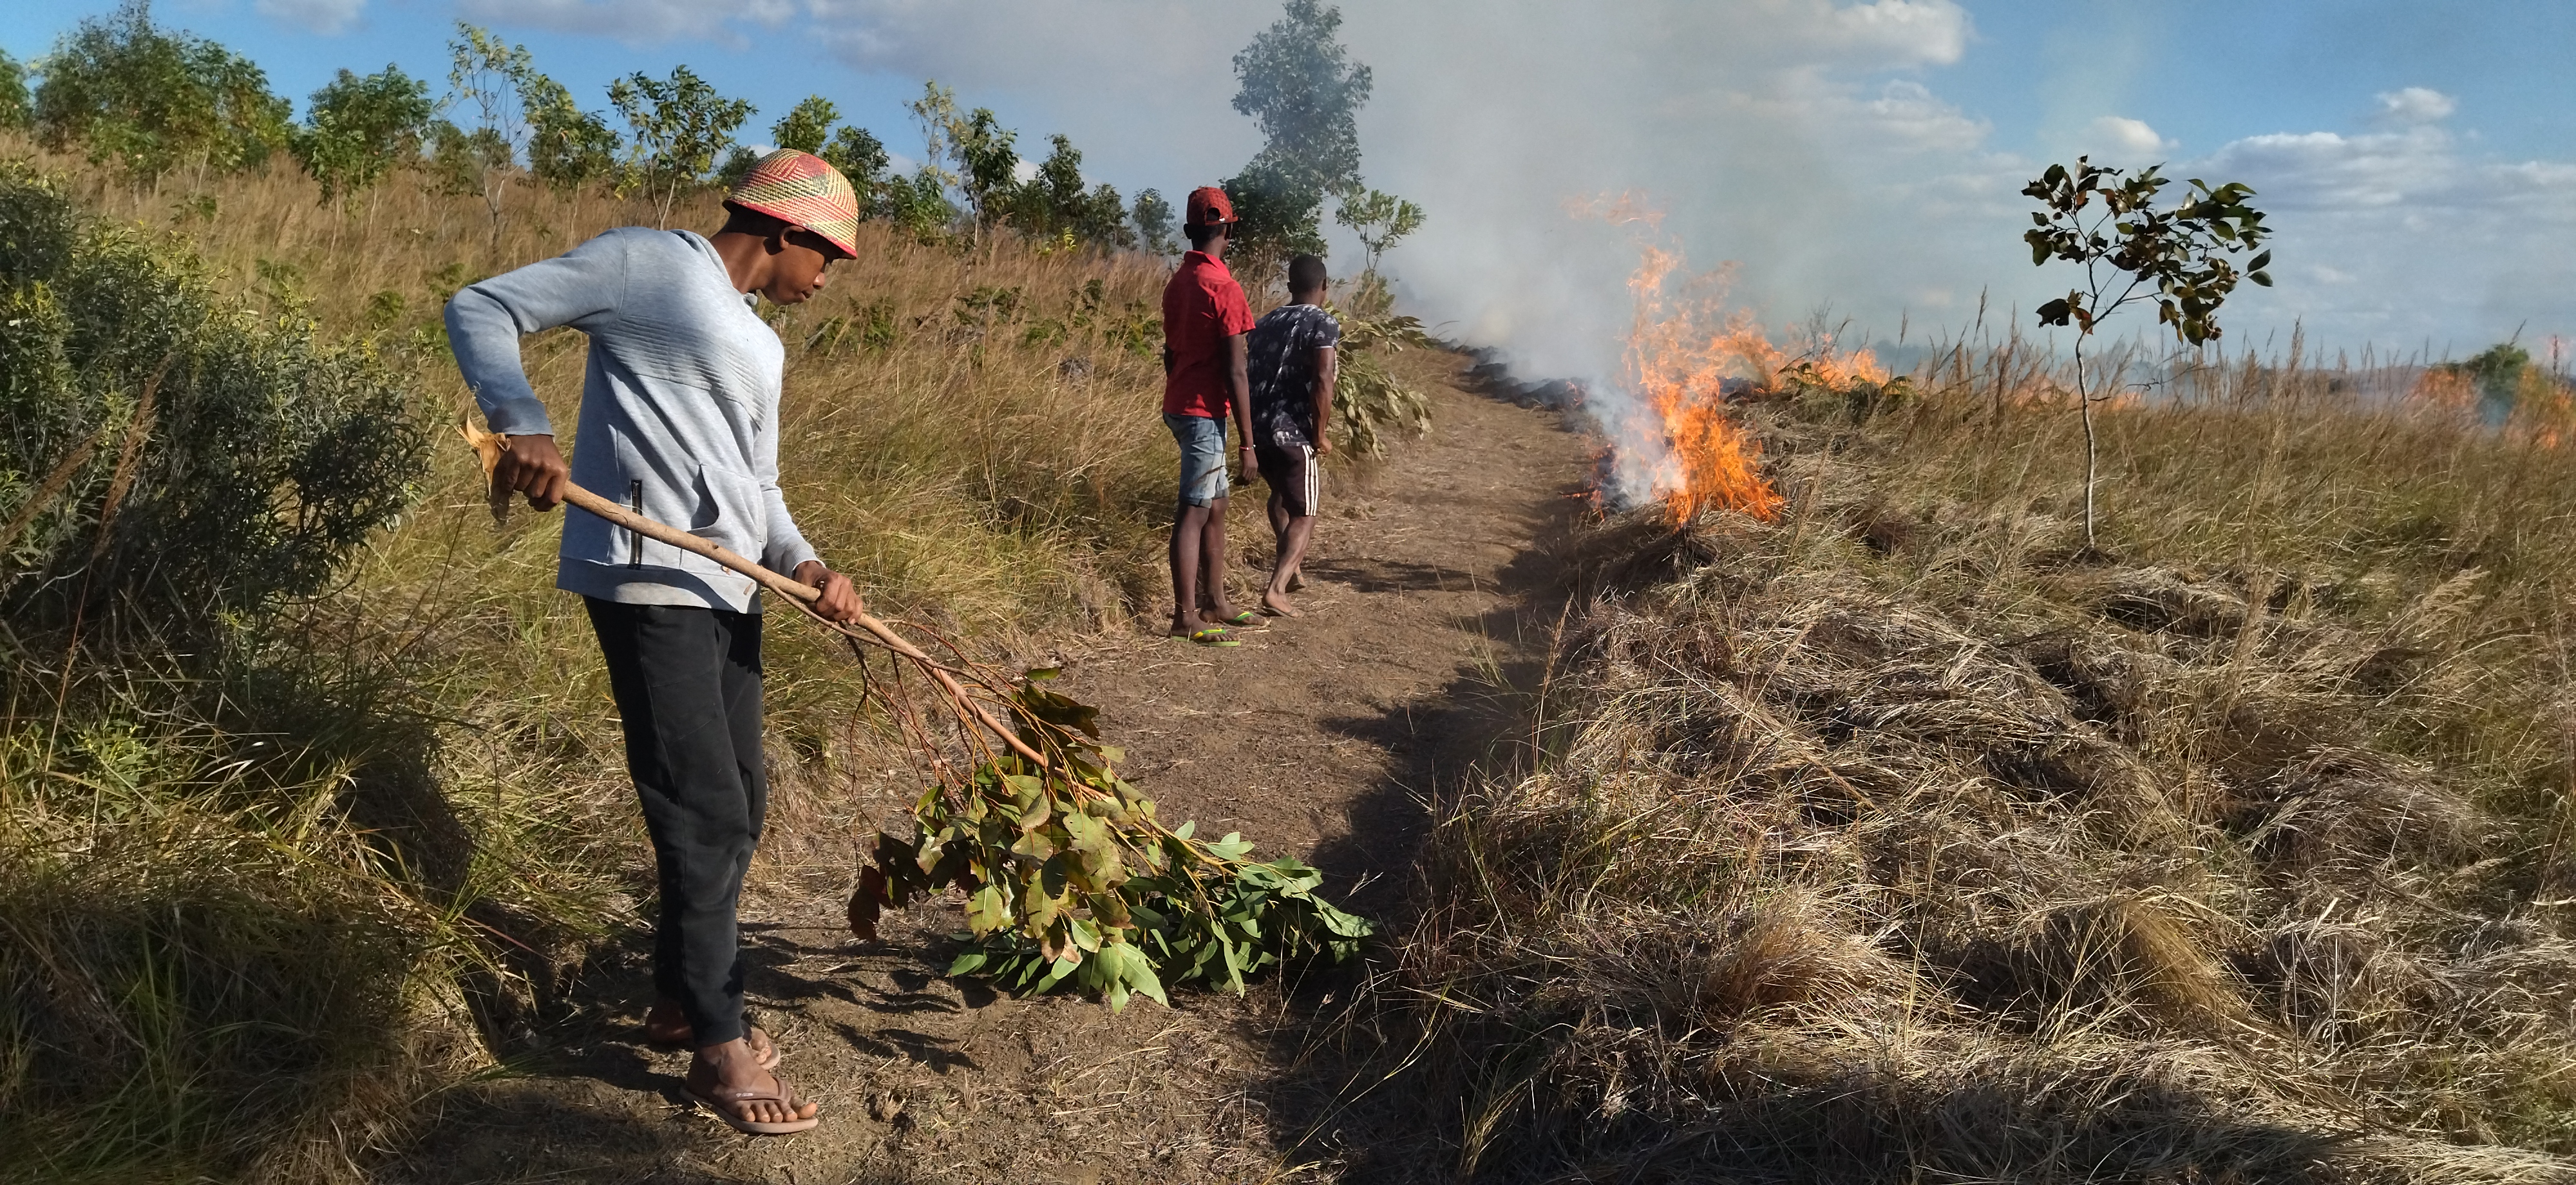 Brandschneise wird angelegt in Madagaskar